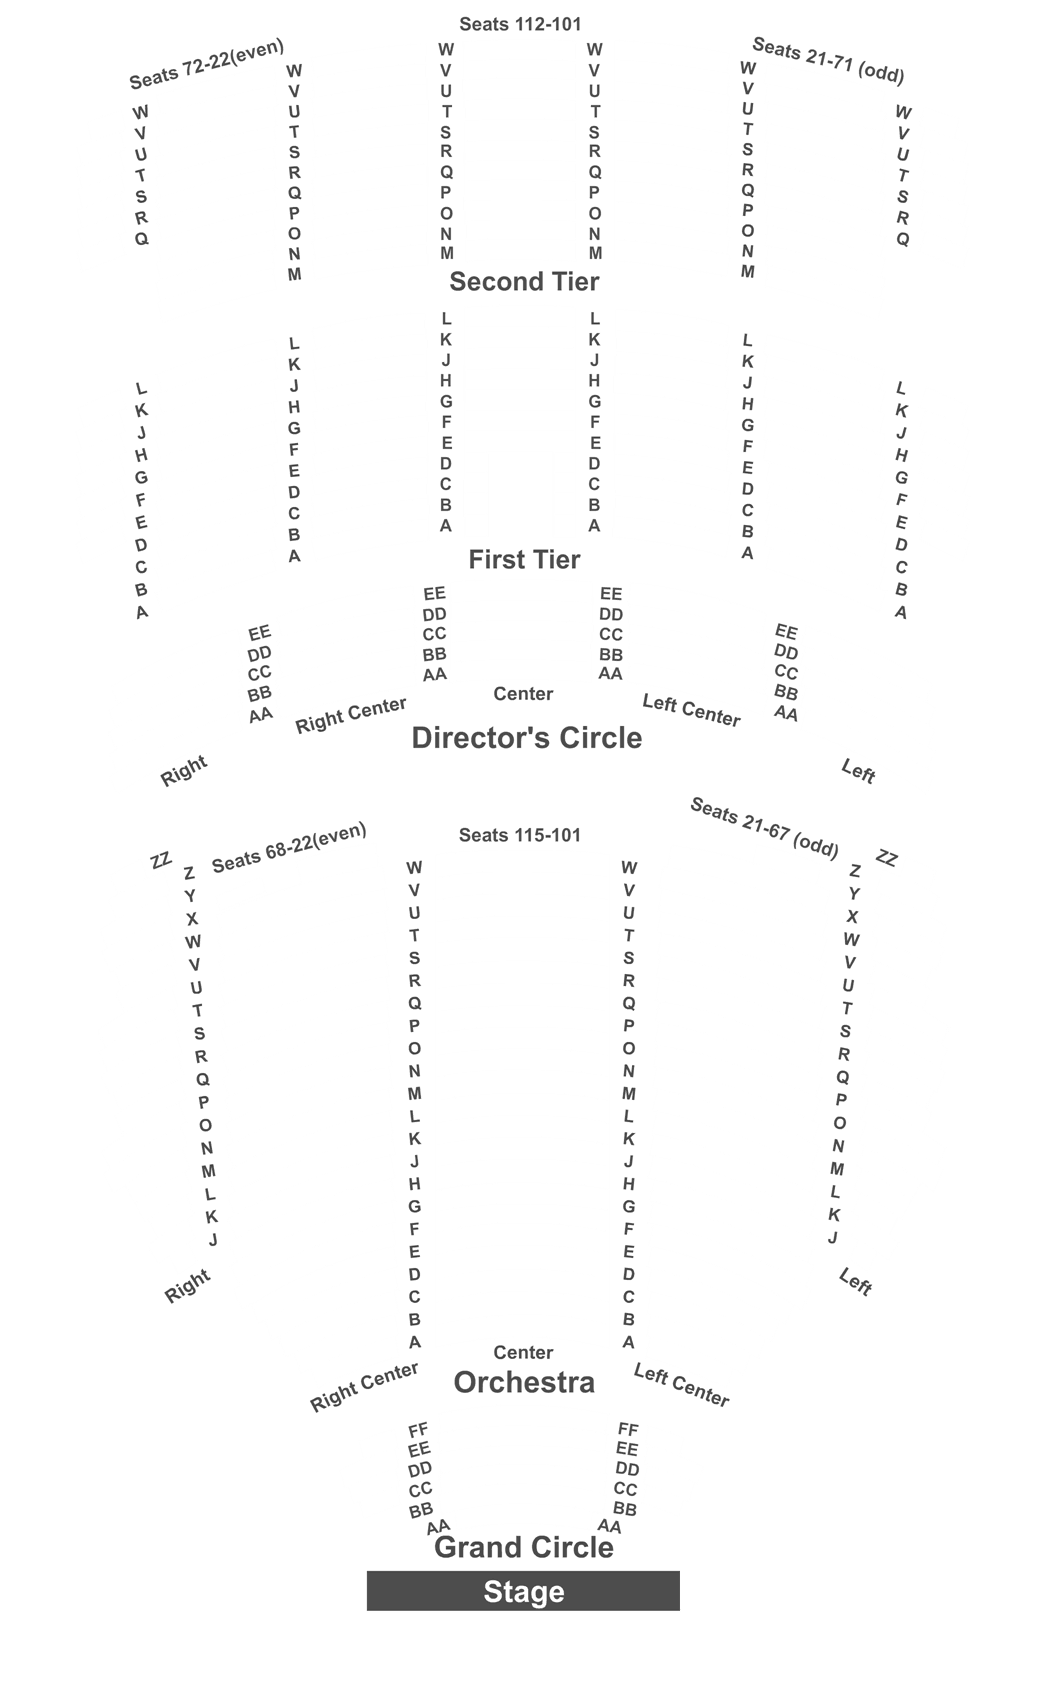 Benedum Center Pittsburgh Seating Chart